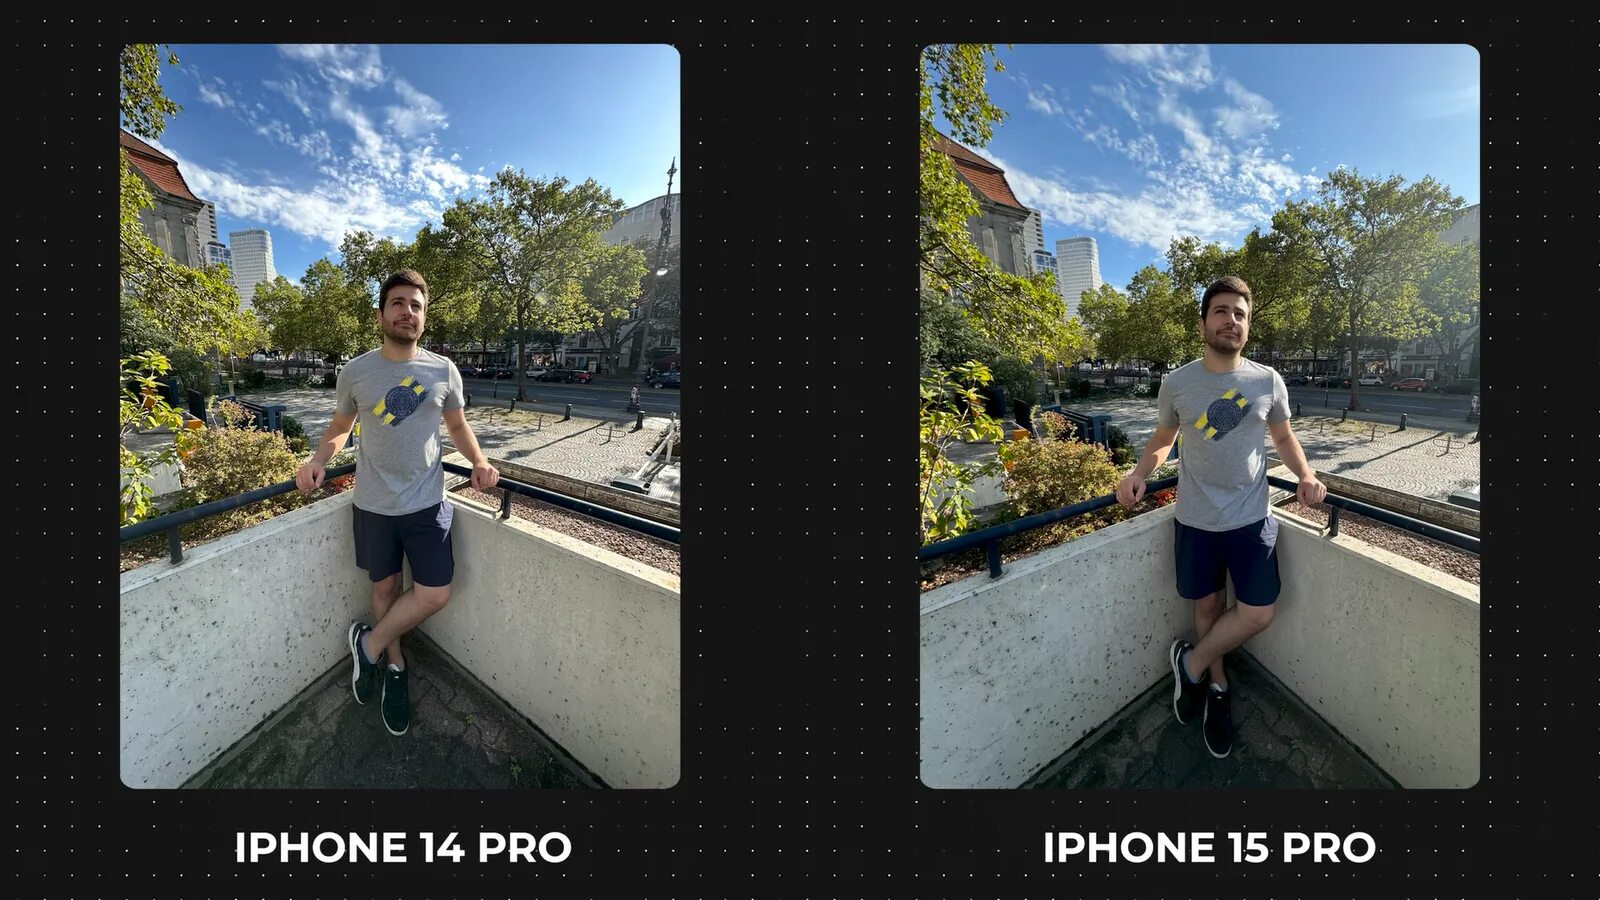 Iphone 15 pro сравнение размеров. Качество камеры iphone 15. Качество камеры на iphone 15 плюс. Iphone 15 Pro и 14 Pro сравнение. Камера на айфон 15 про Макс качество.